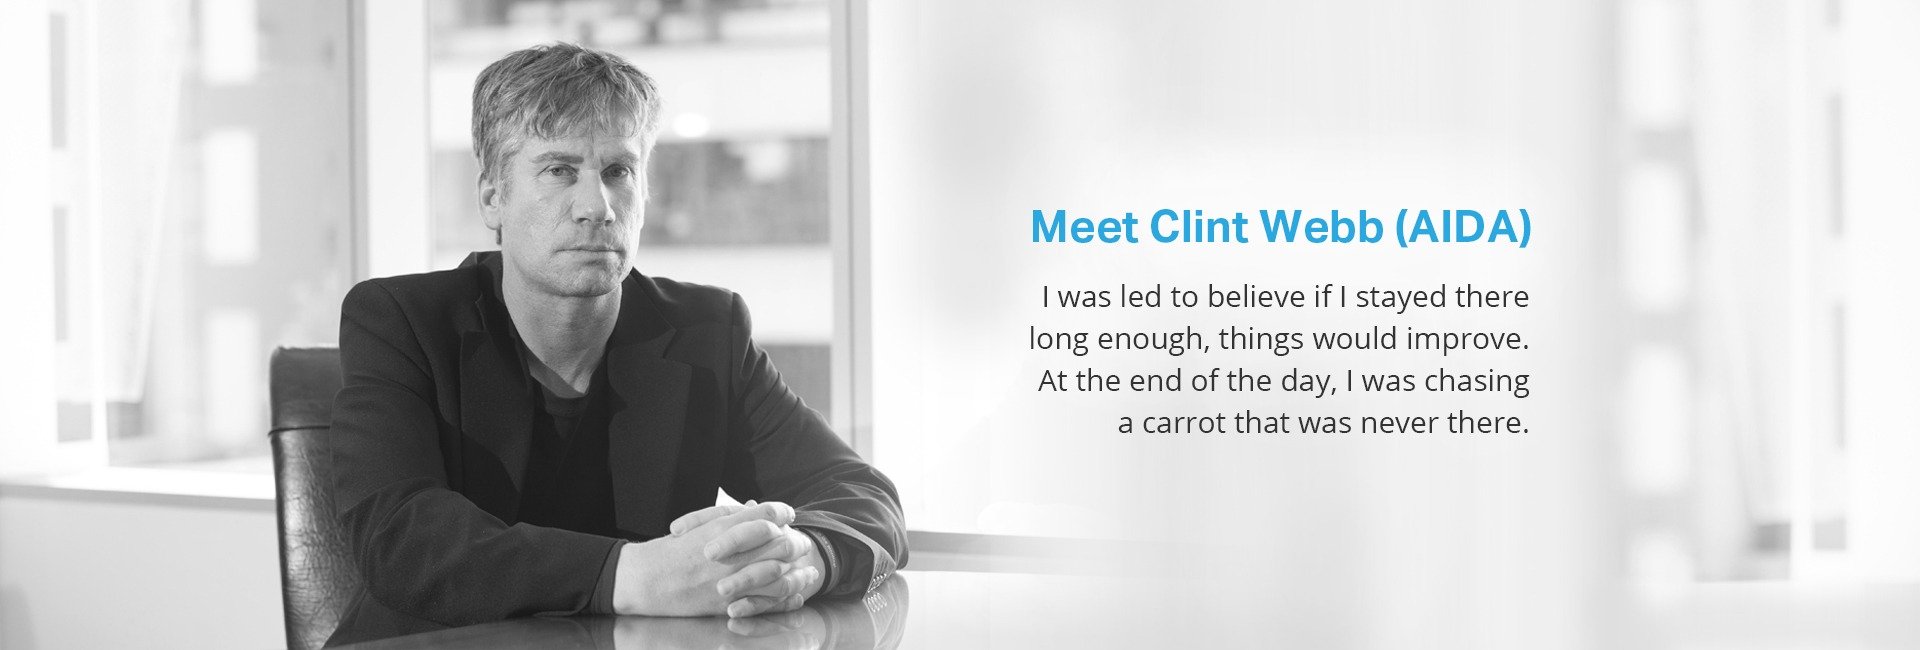 Meet Clint Webb